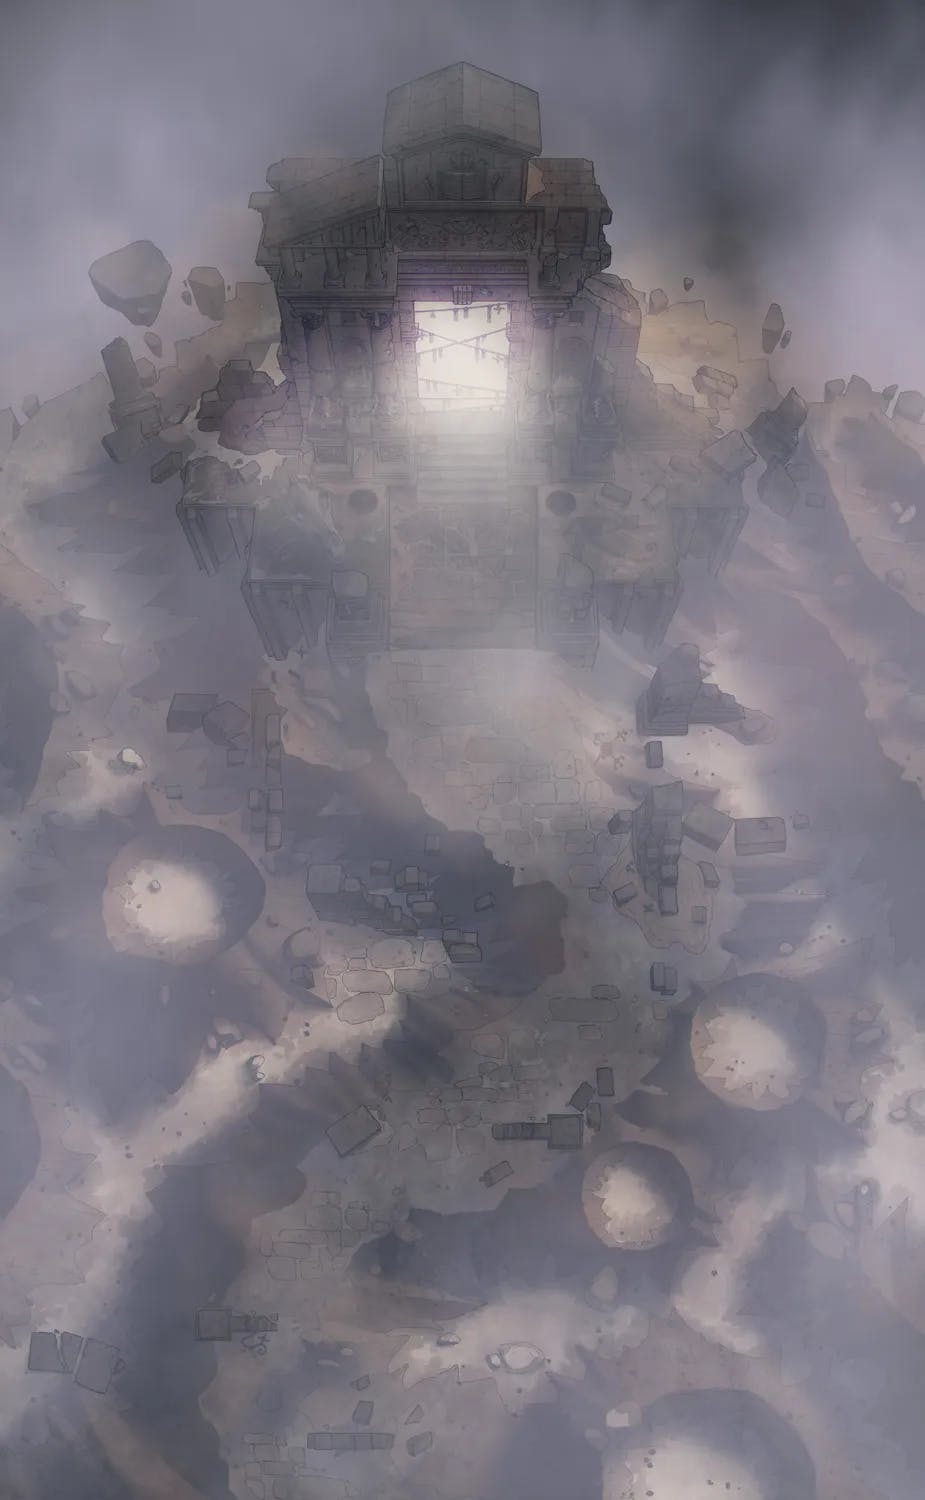 Wizard Prison Pt. 1 map, Fog variant